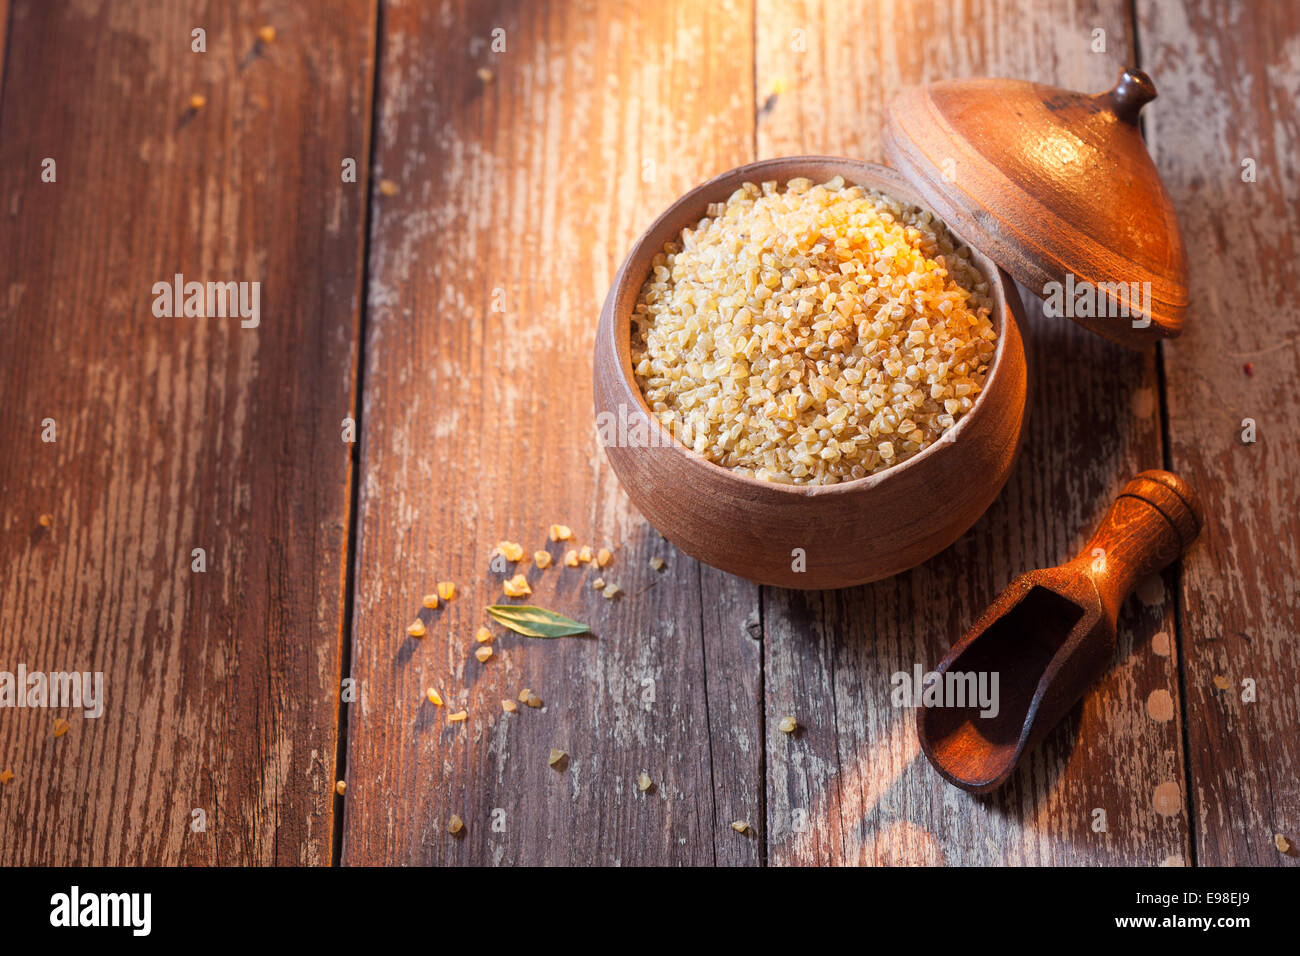 Boulgour ou blé concassé dans un pot en terre cuite utilisé dans la cuisine du Moyen-Orient, high angle view sur de vieux bois texturé avec copyspace Banque D'Images